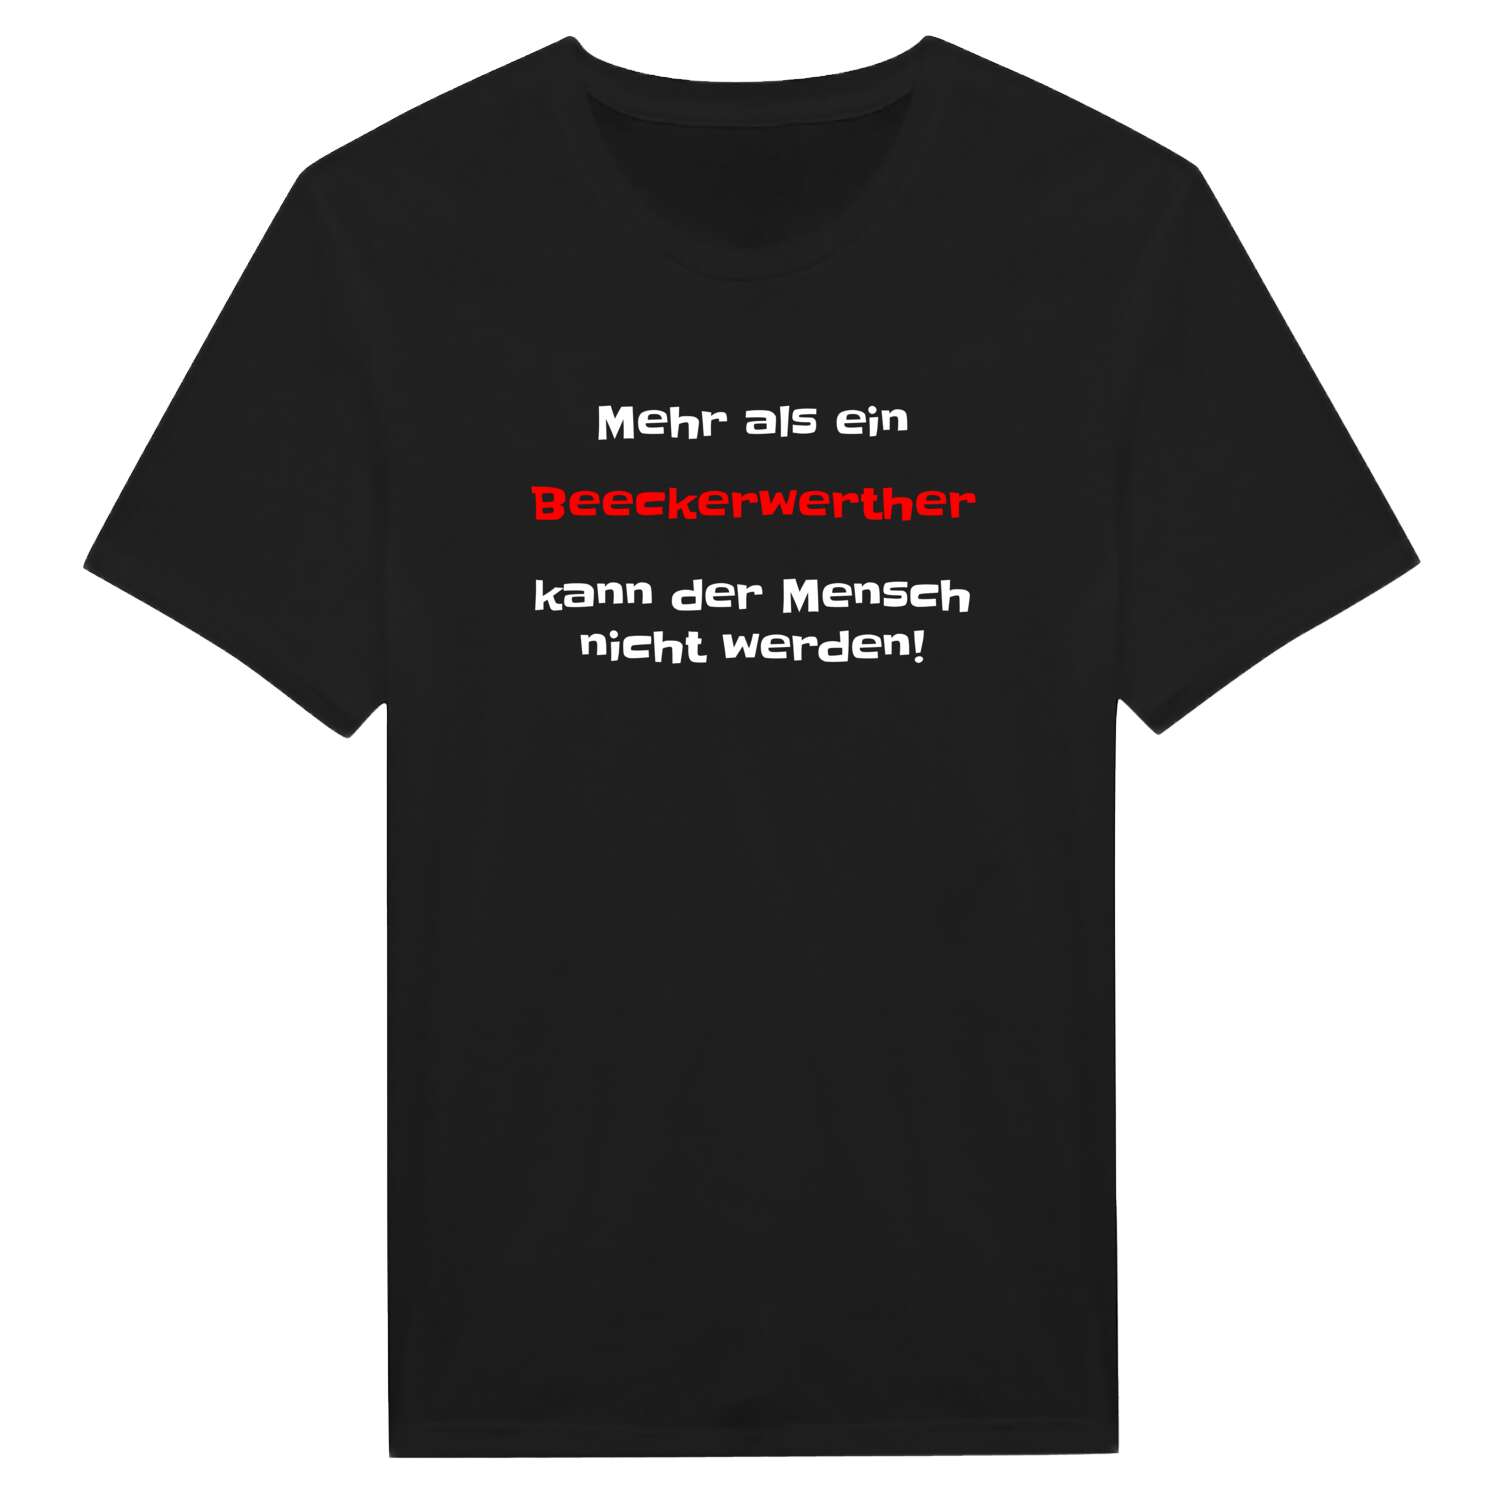 Beeckerwerth T-Shirt »Mehr als ein«